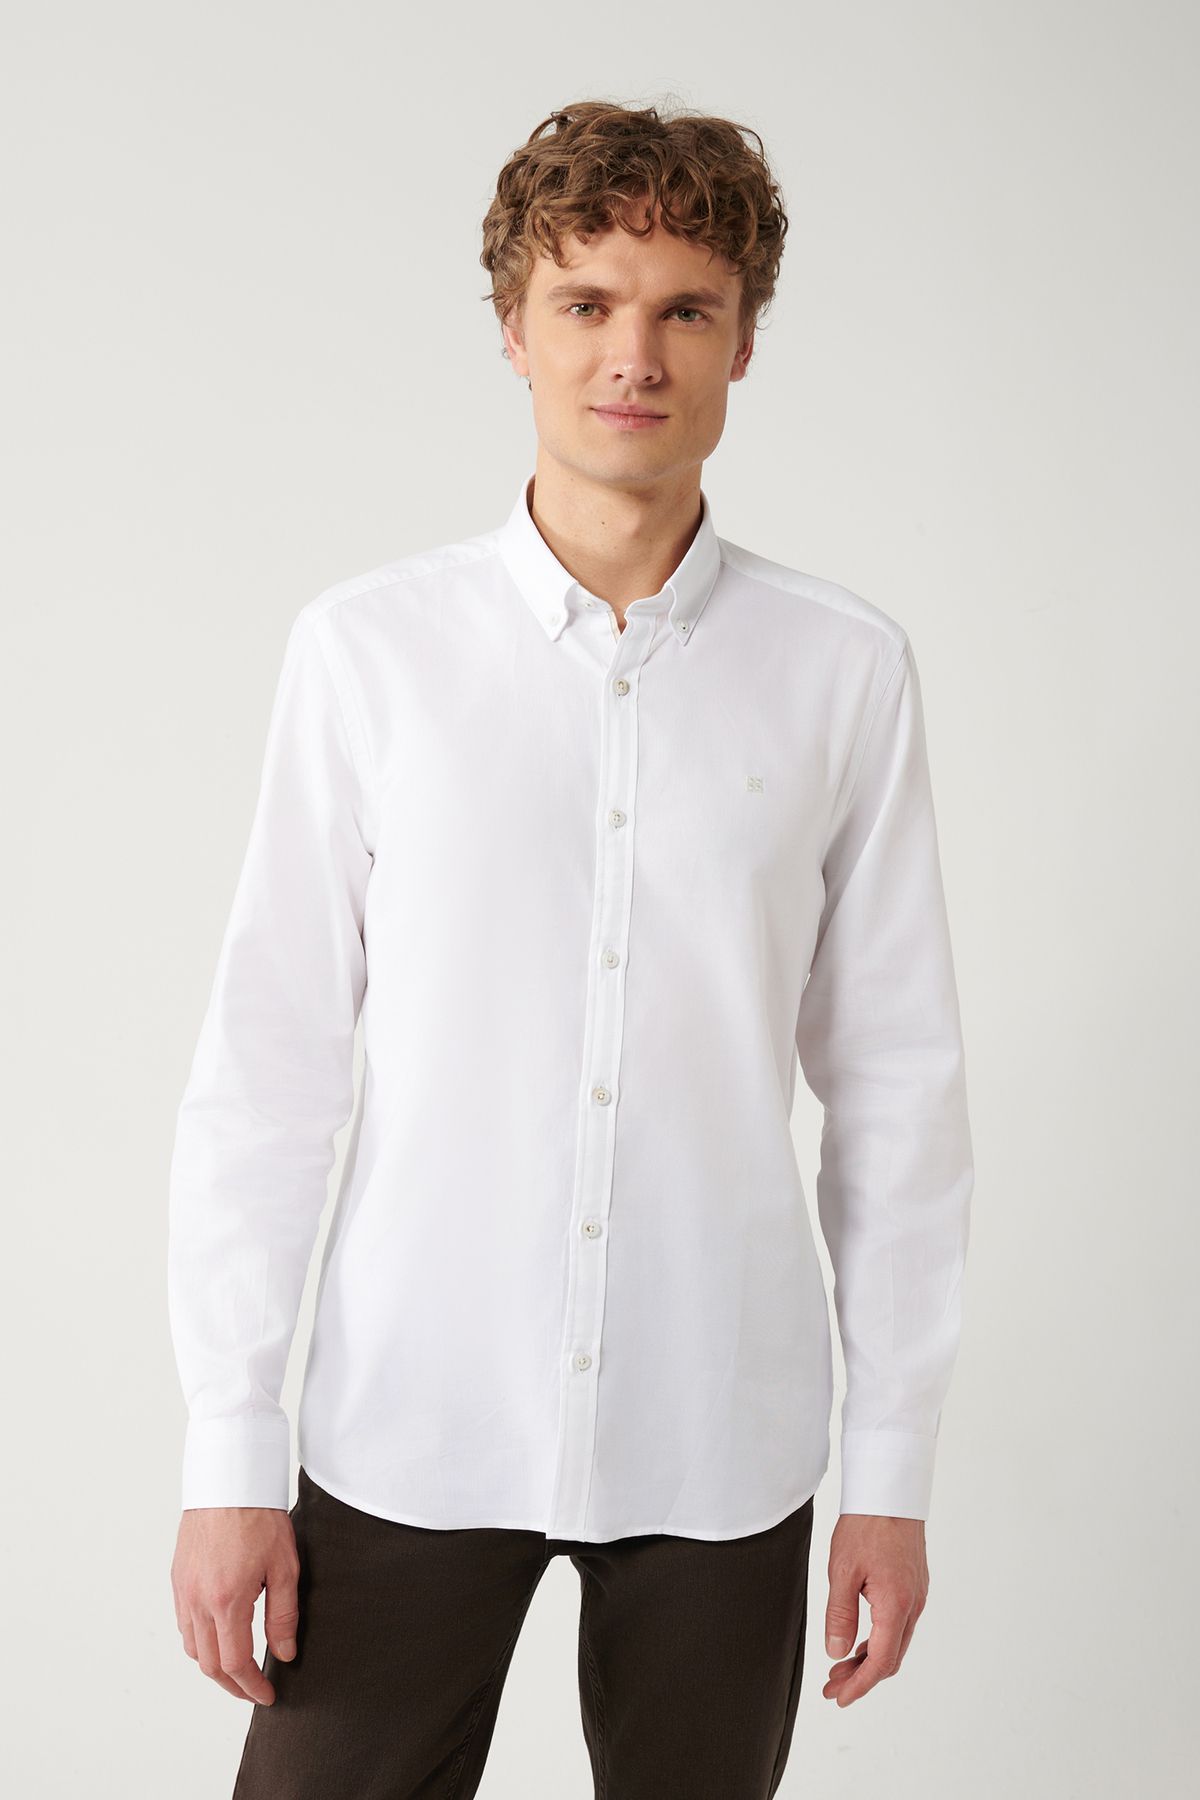 Avva Erkek Beyaz Düğmeli Yaka %100 Pamuk Oxford Regular Fit Gömlek B002034